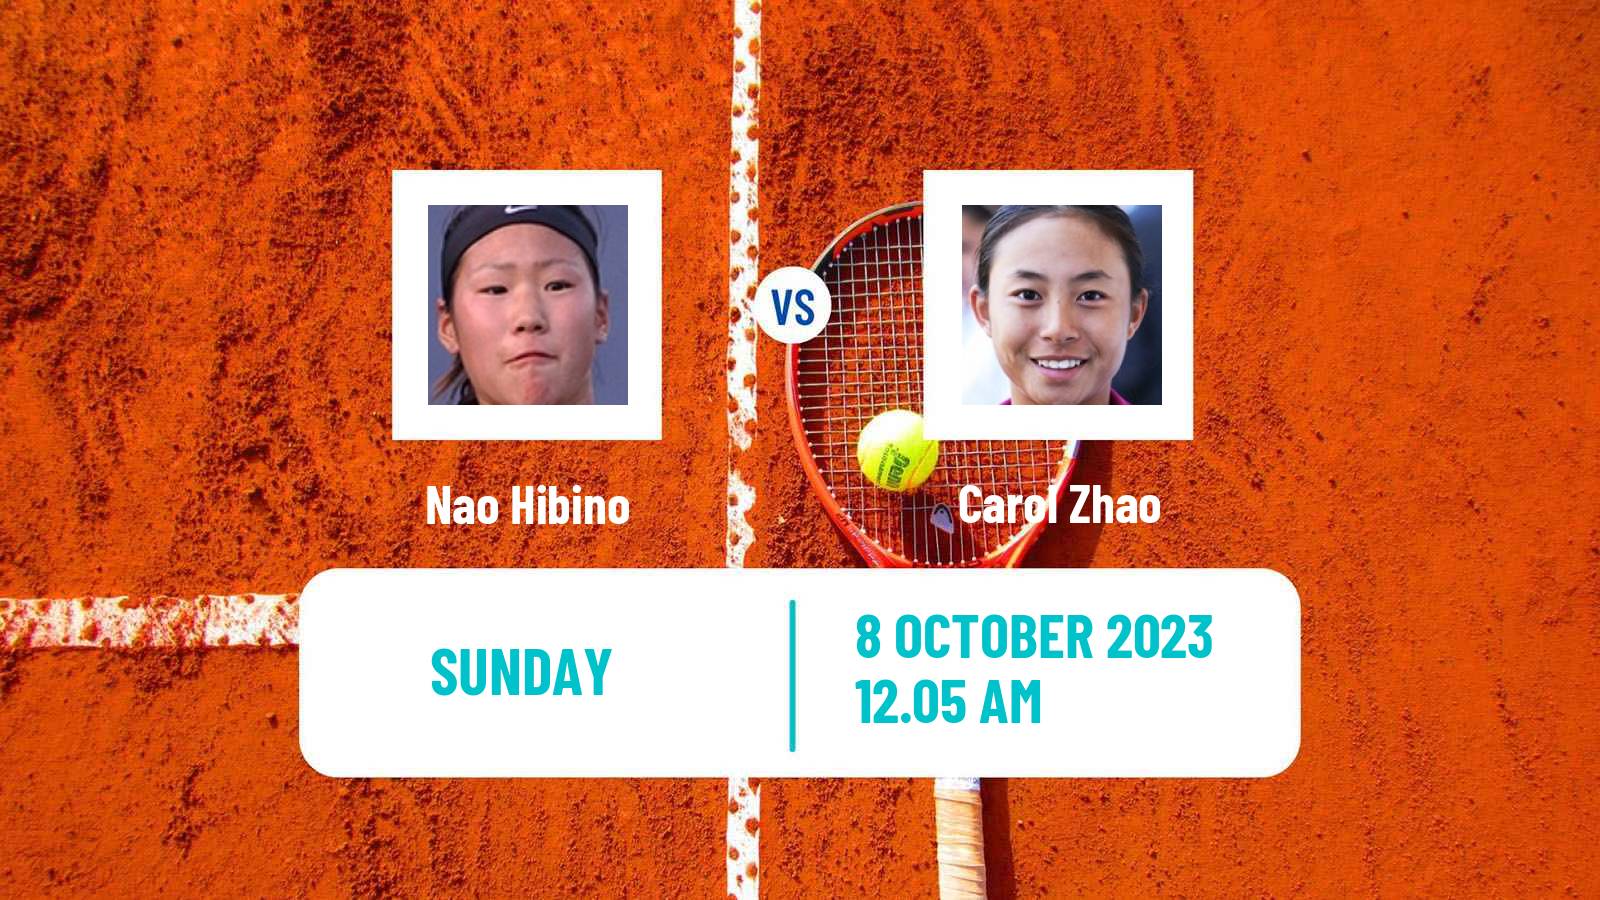 Tennis WTA Zhengzhou Nao Hibino - Carol Zhao